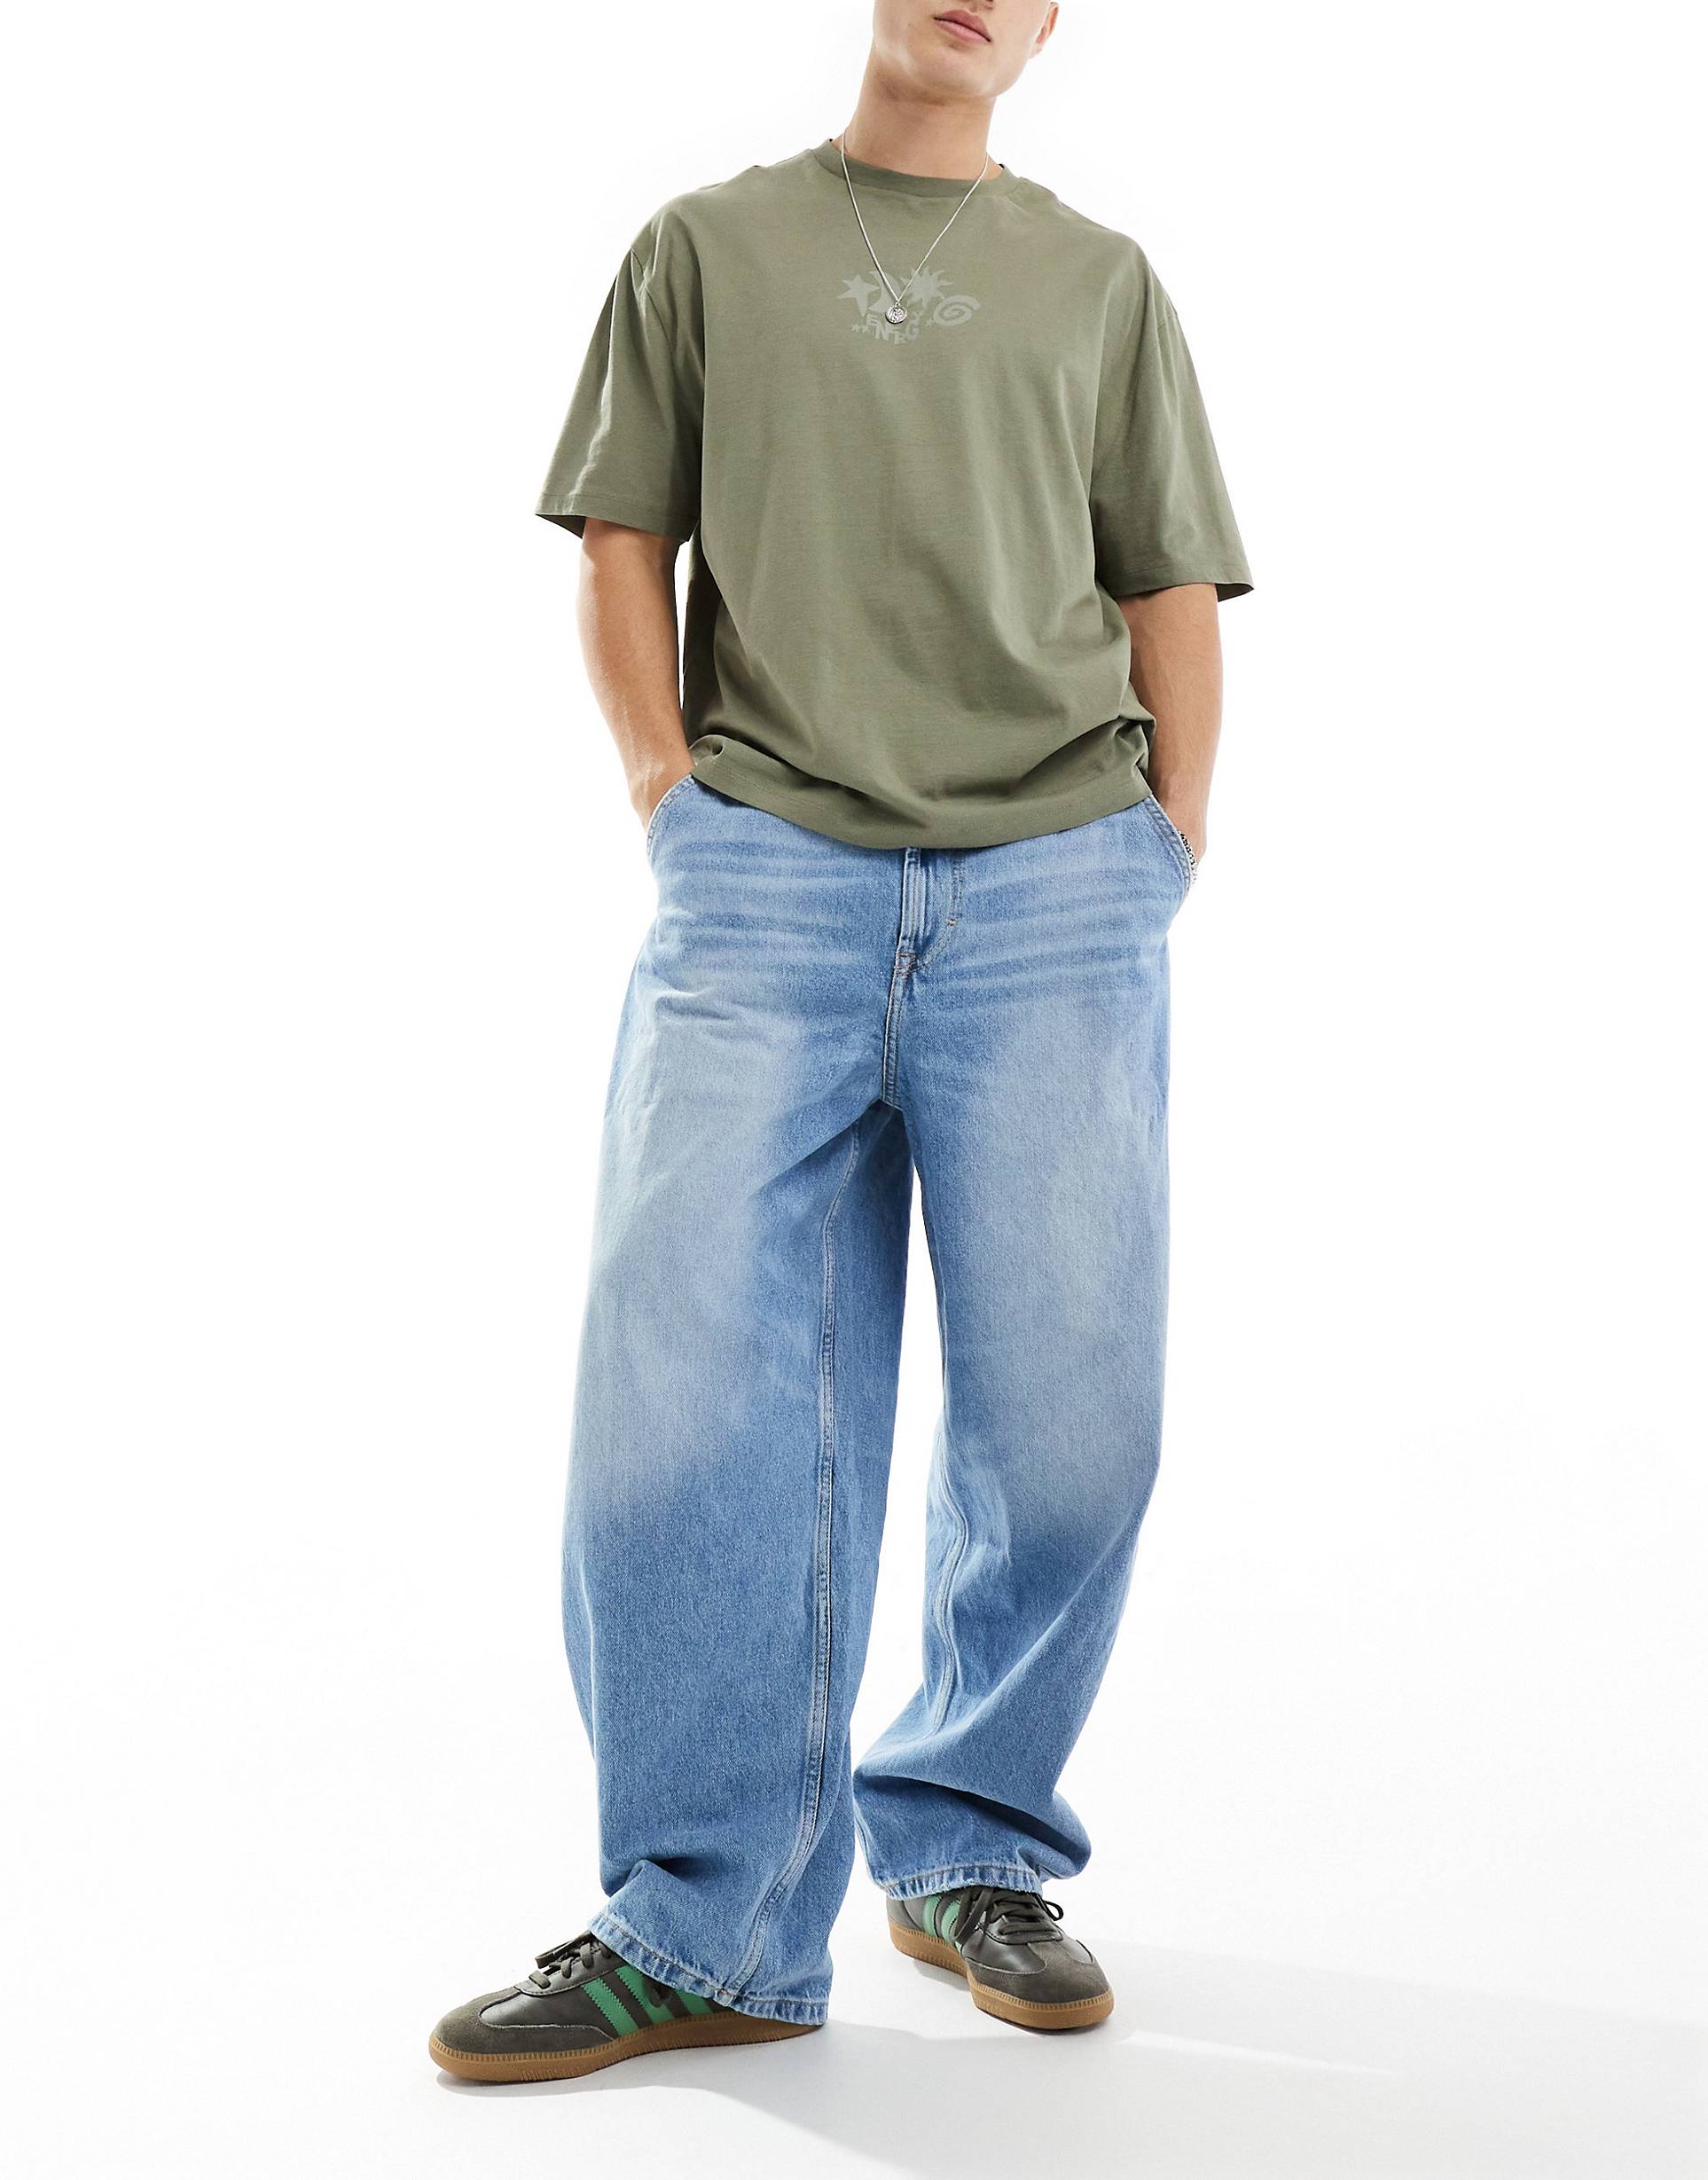 Джинсы Bershka Skater Fit, светло-синий джинсы bershka с потертостями 42 размер новые